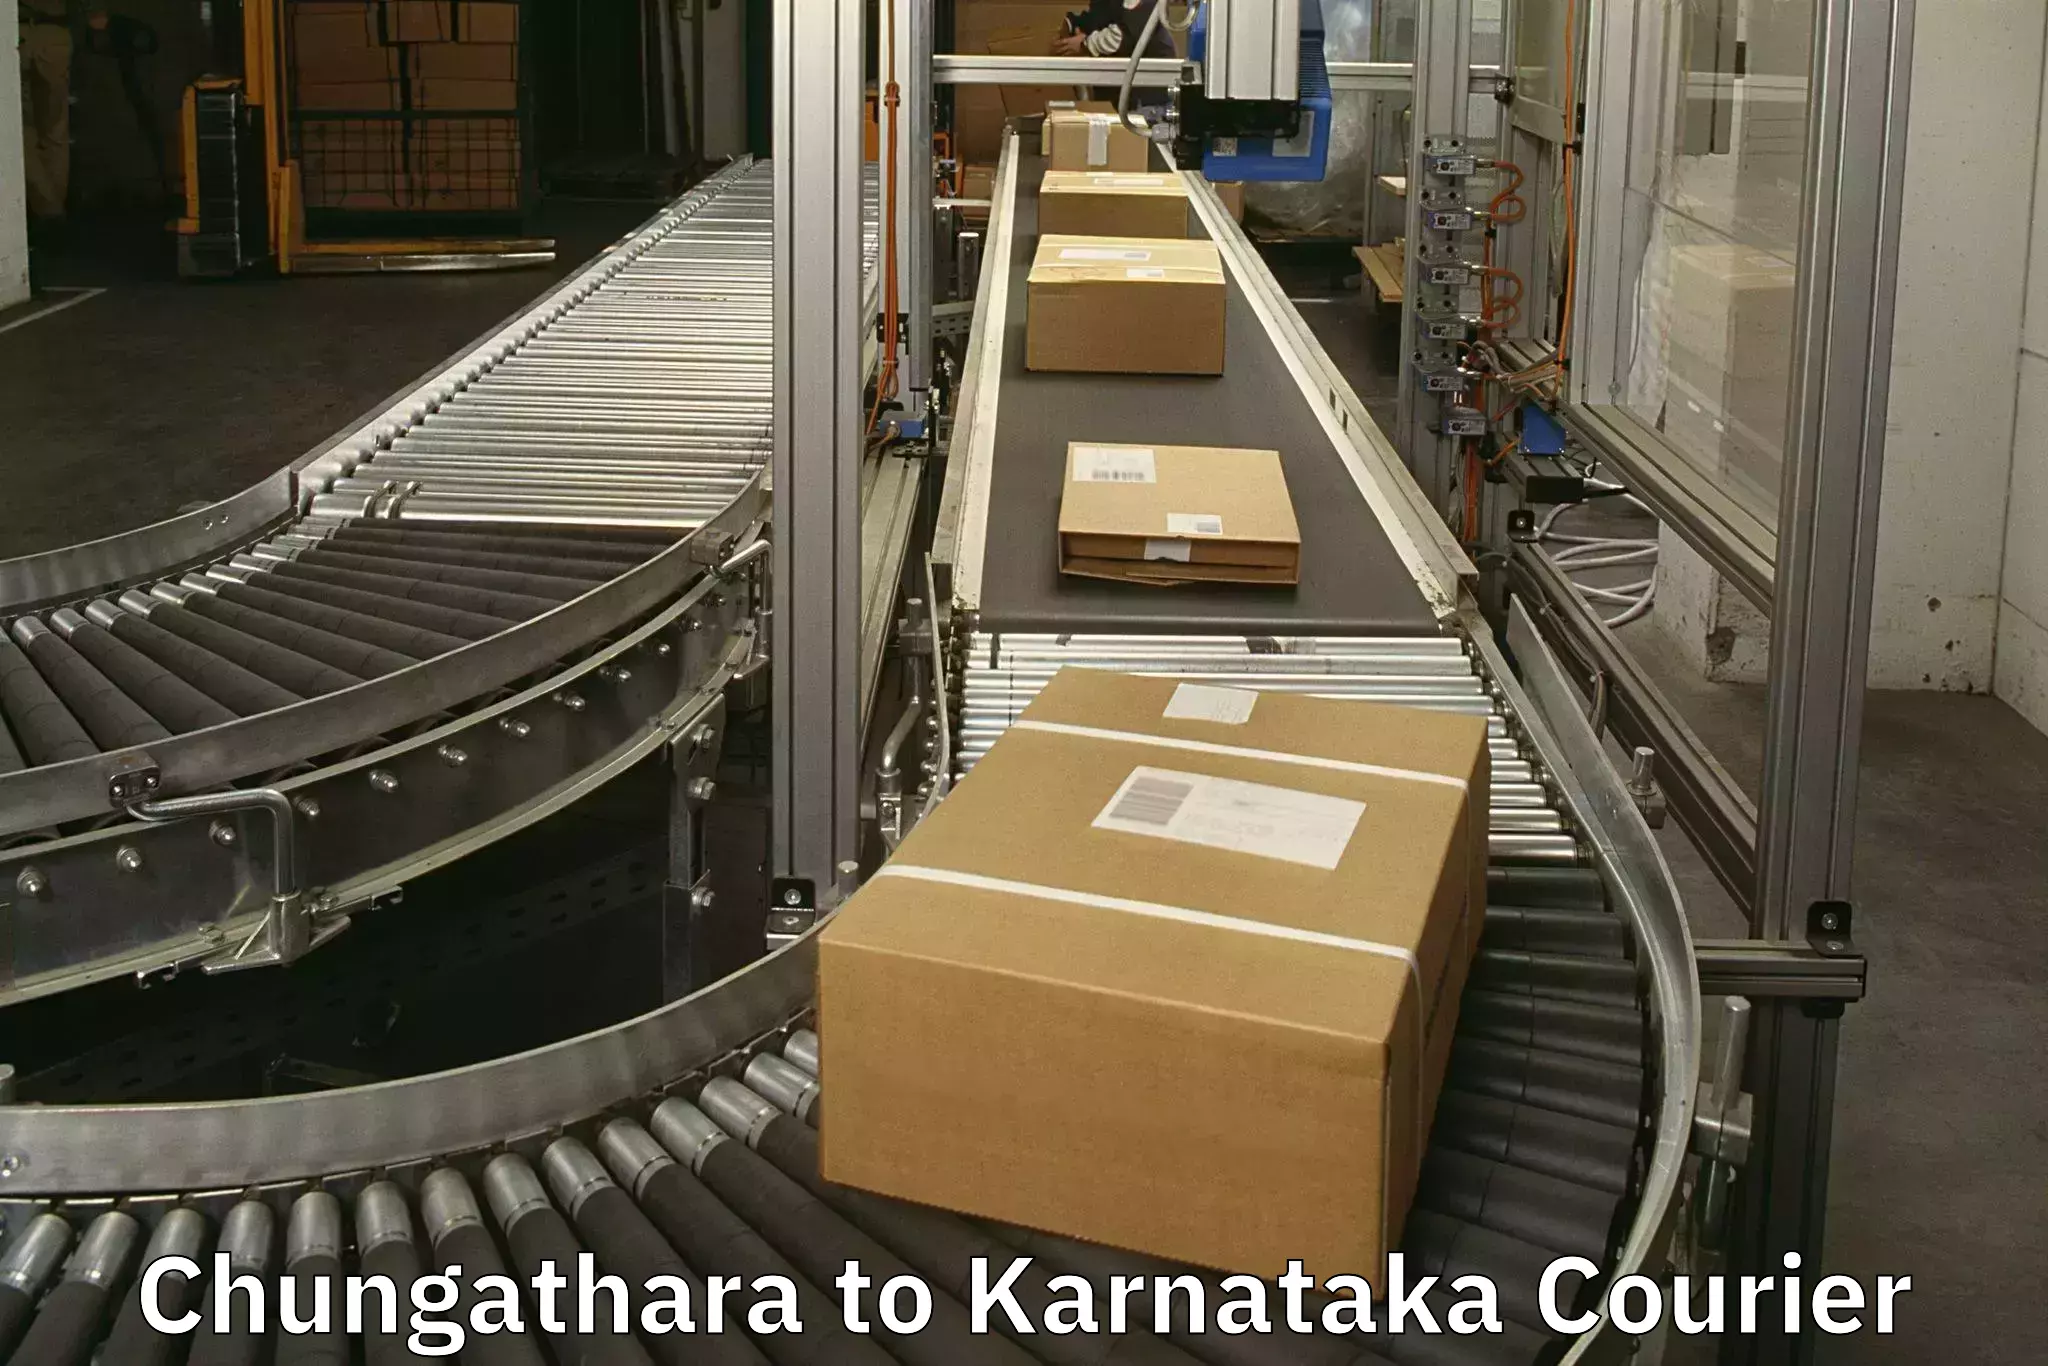 Luggage transport schedule Chungathara to Kanjarakatte